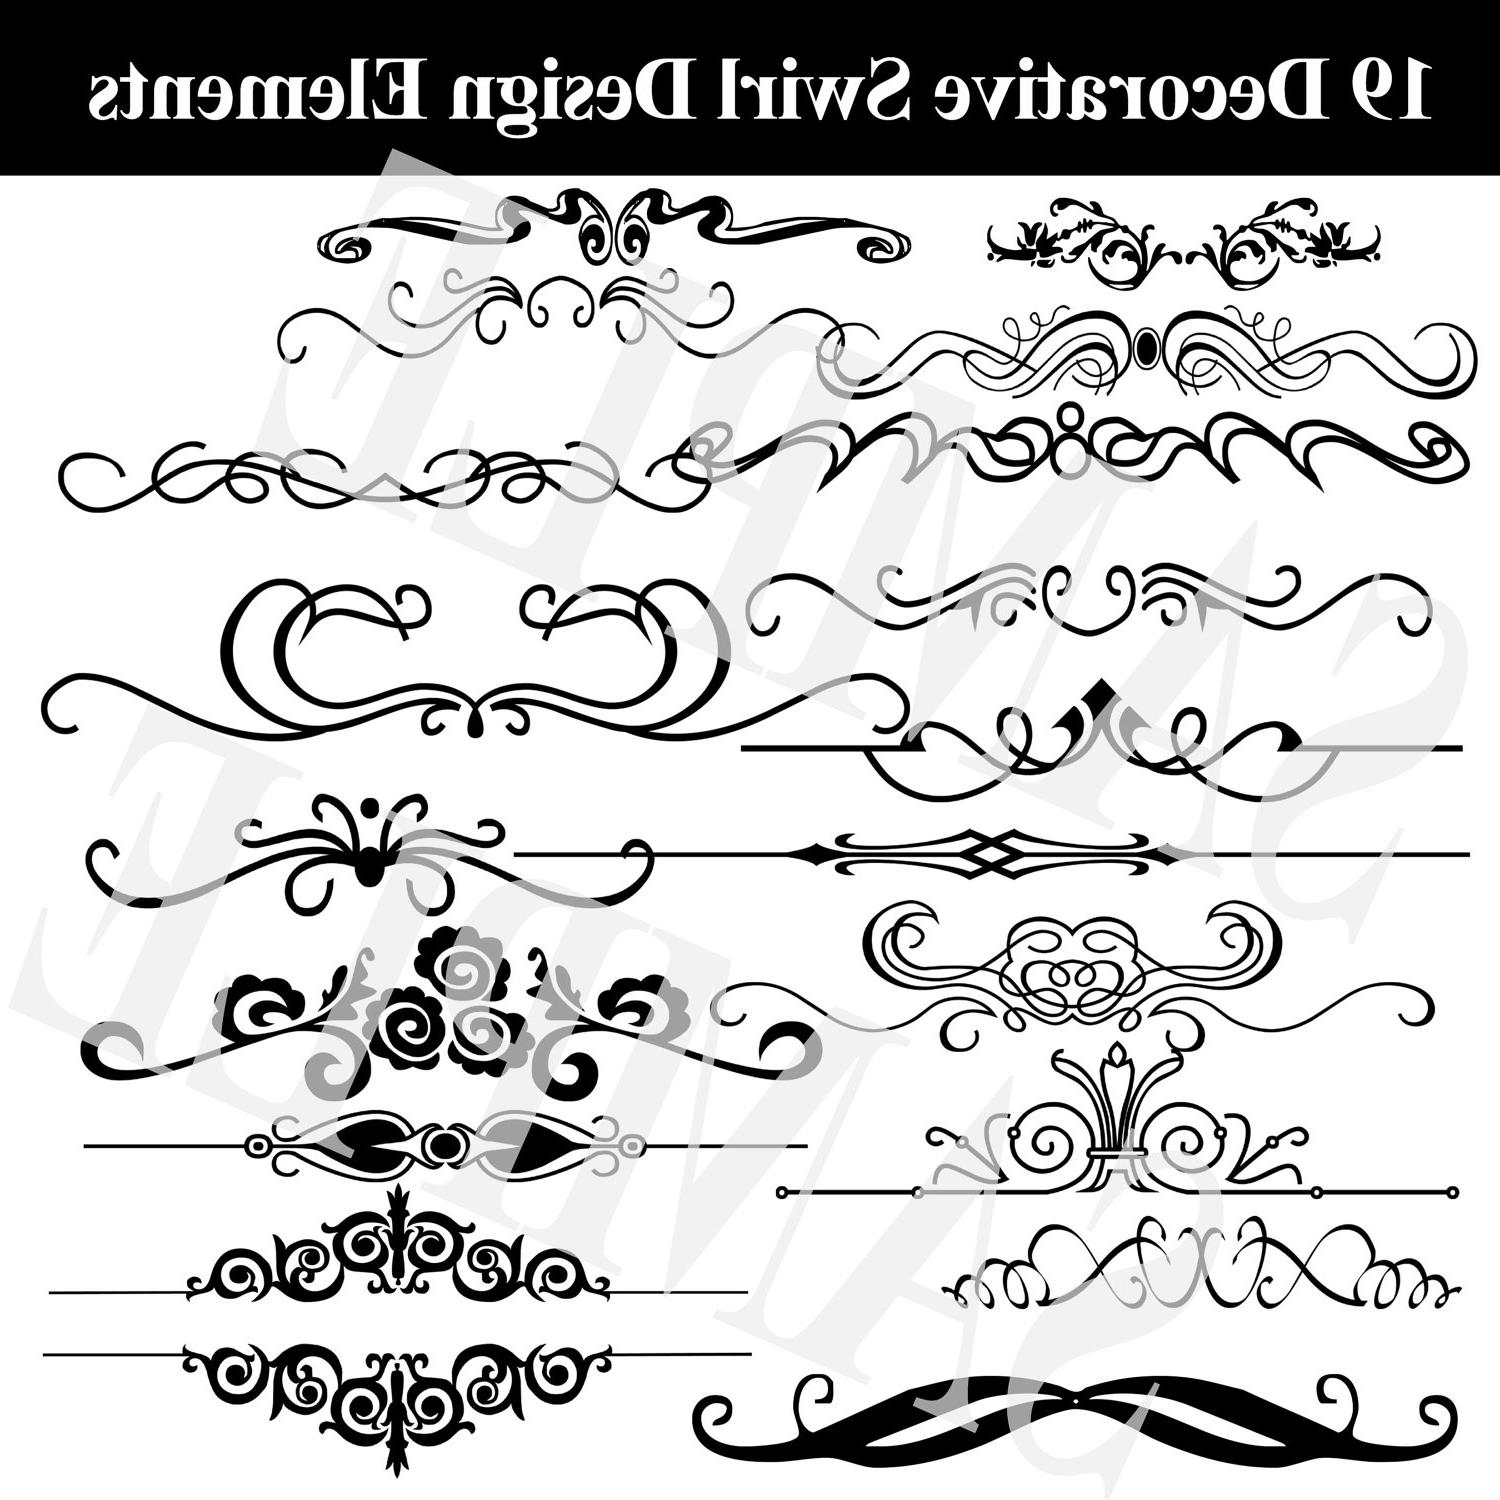 19 Decorative Swirl designs